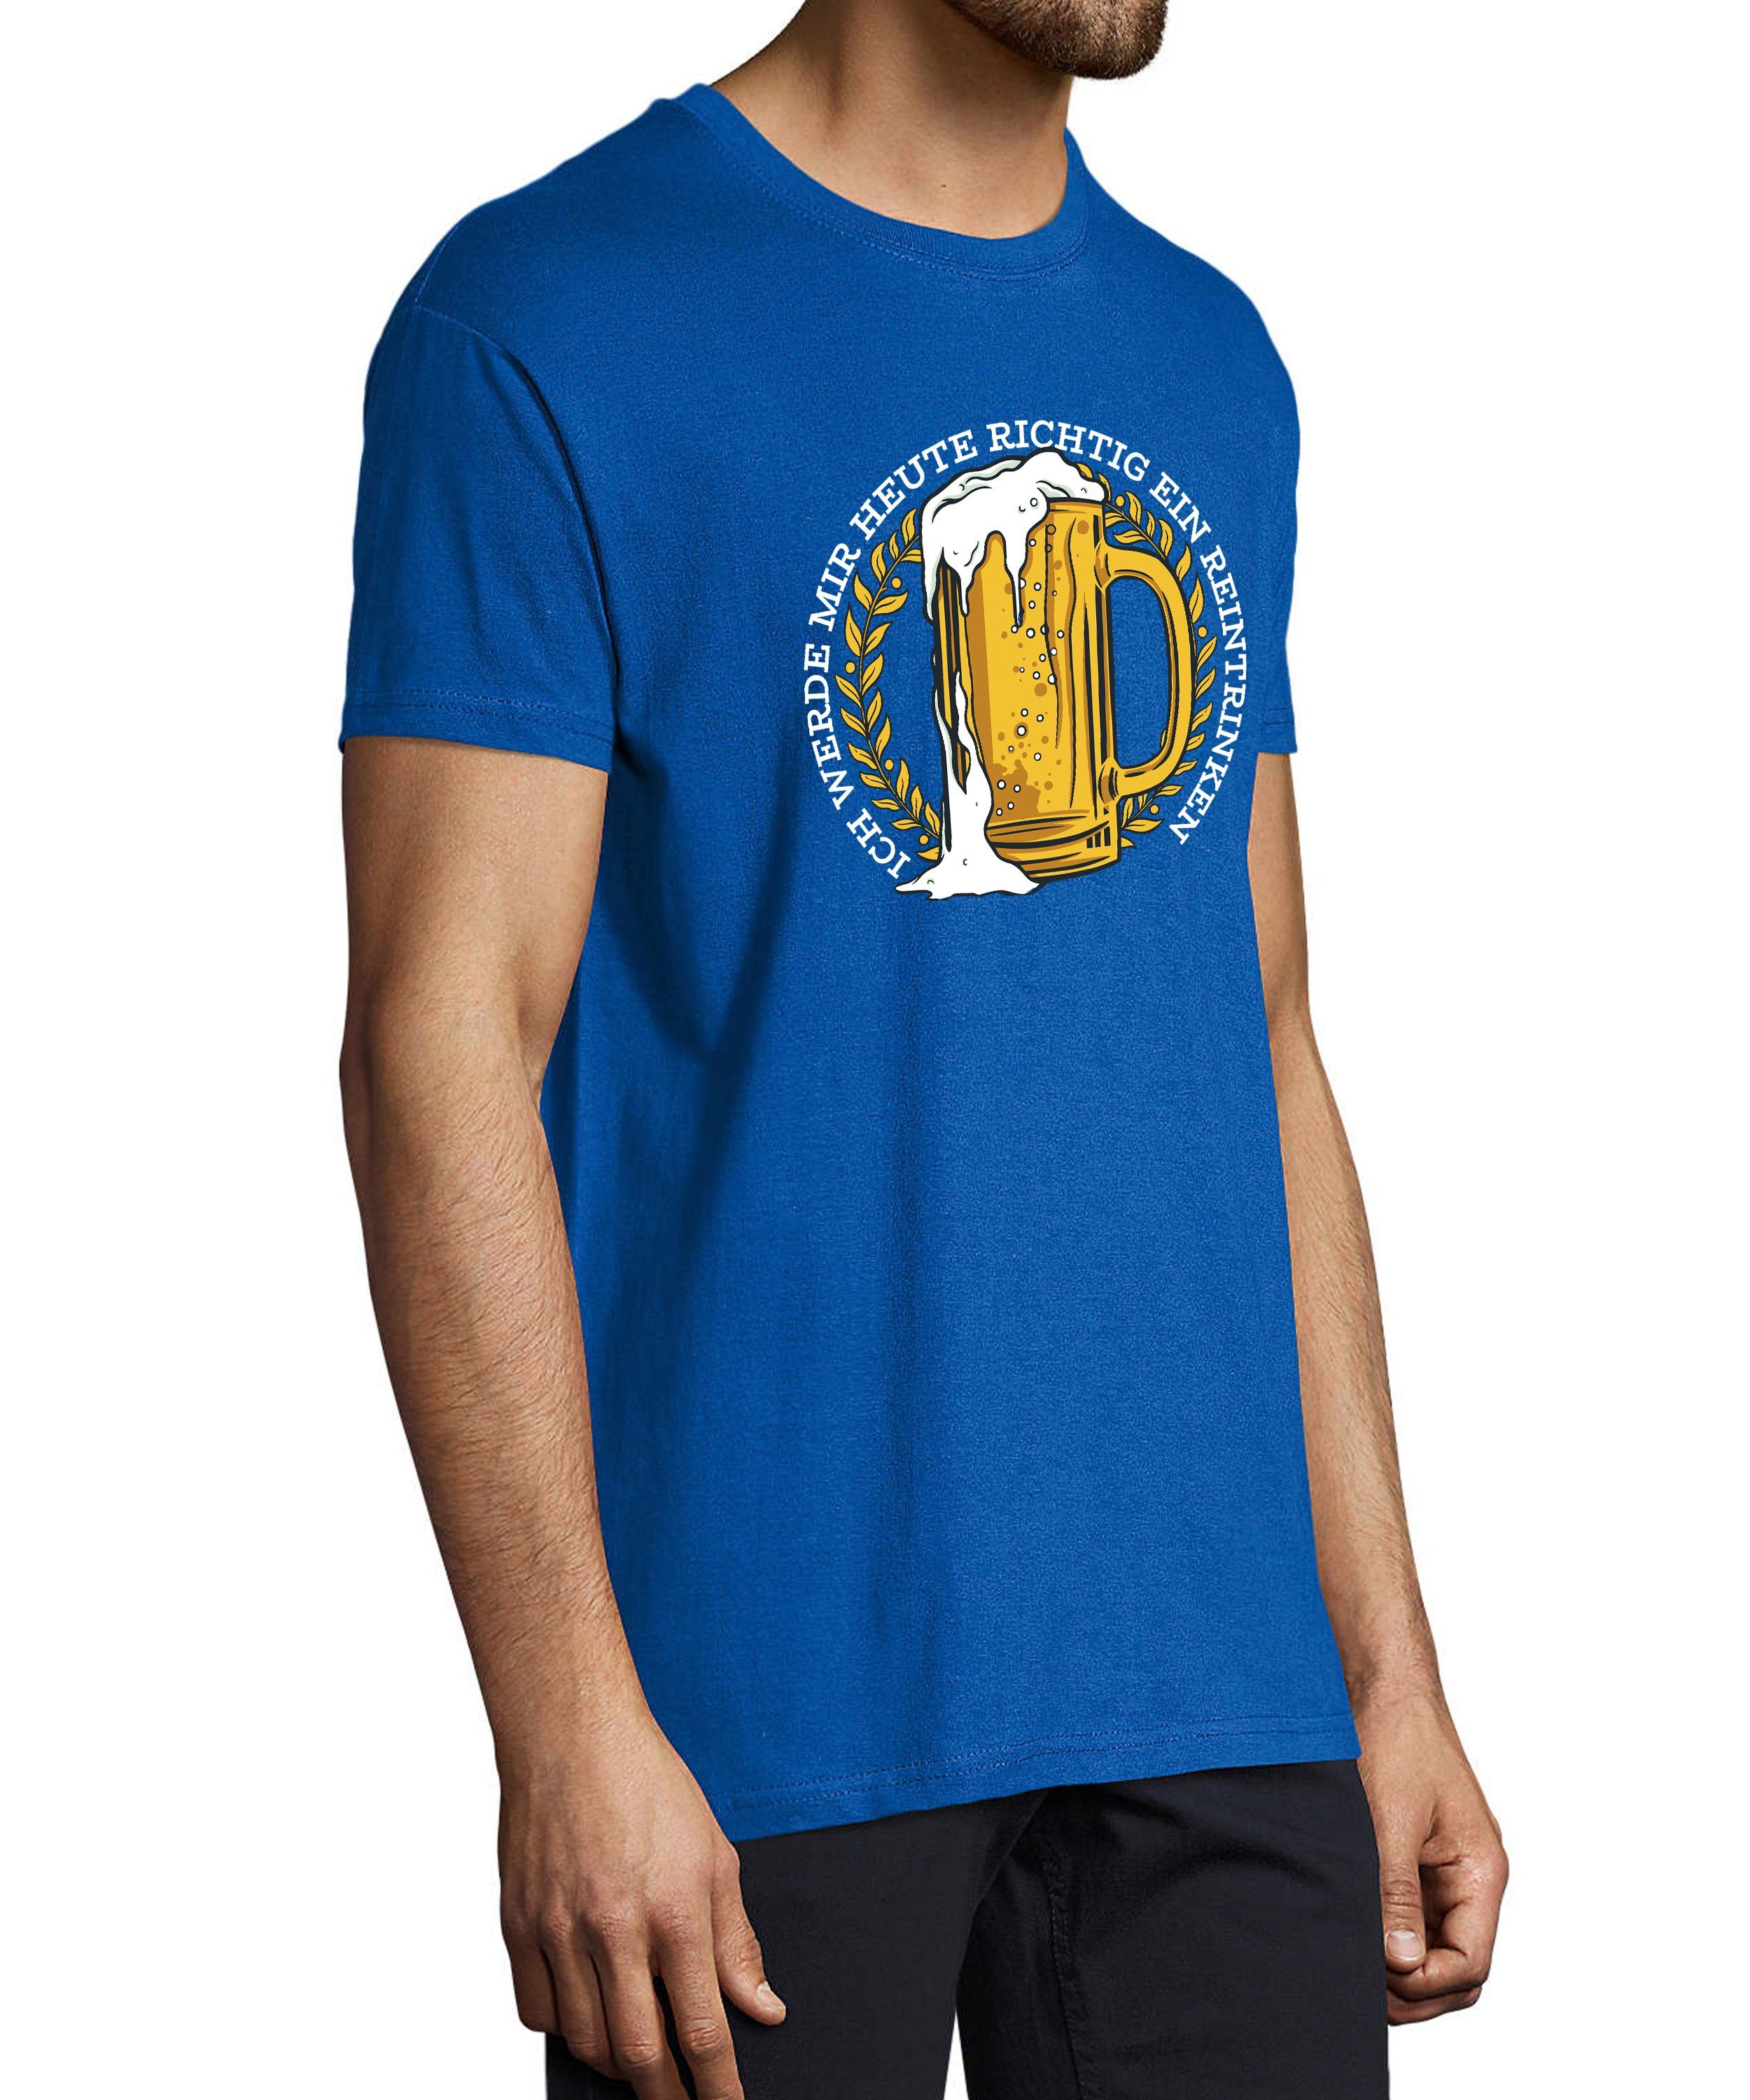 MyDesign24 T-Shirt Herren Fun Print mit Mass royal Oktoberfest - Regular Baumwollshirt i311 Shirt Aufdruck Fit, Trinkshirt Spruch Bier mit blau